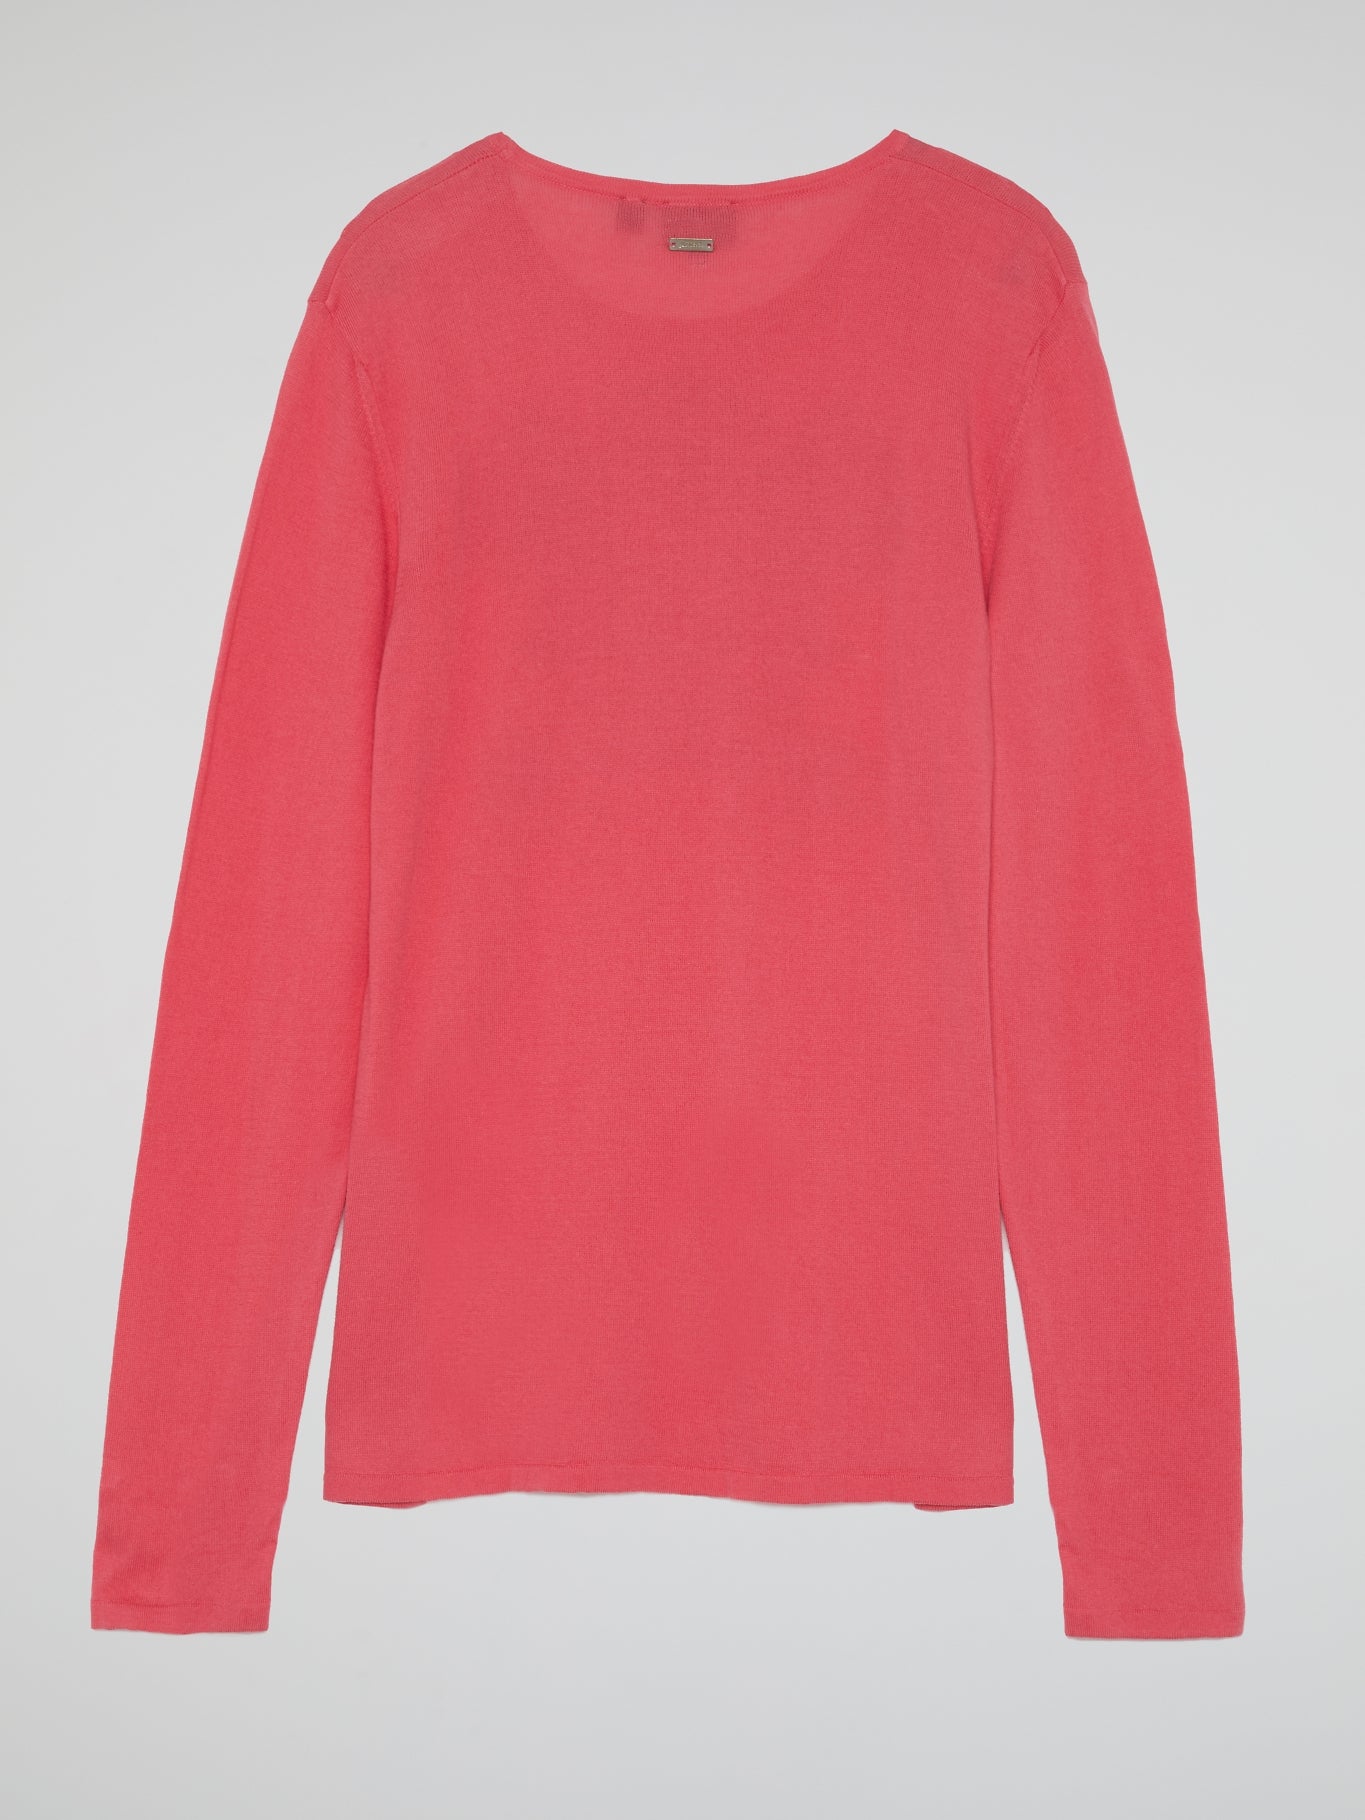 Pink Printed Crewneck Sweatshirt